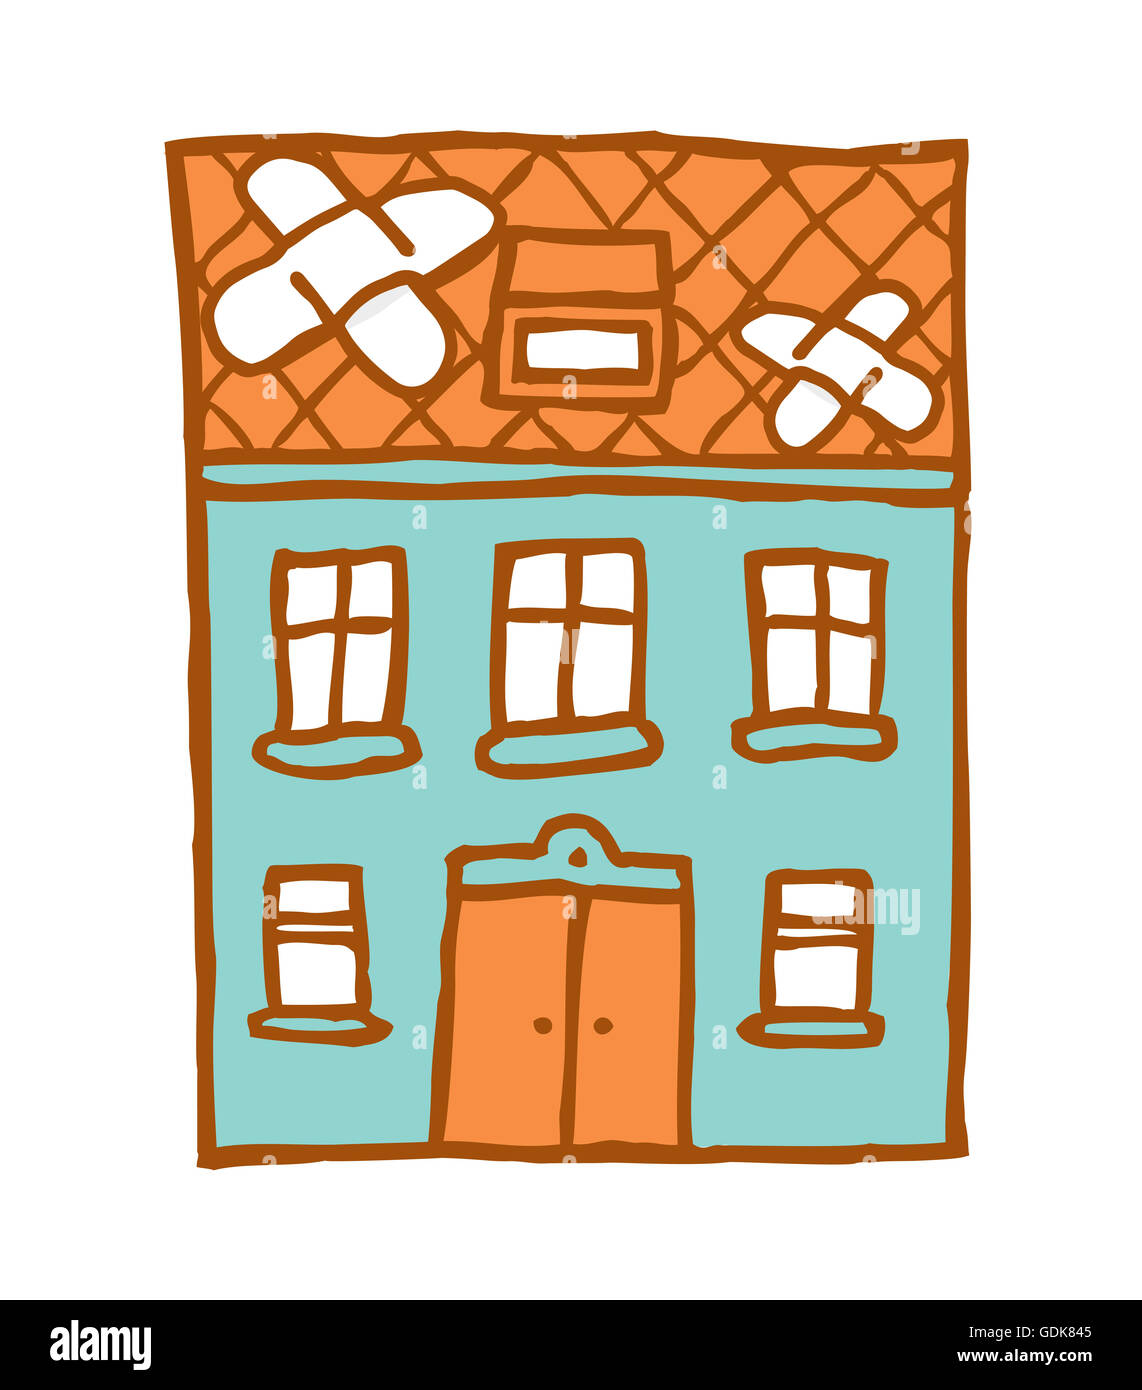 Ilustración de dibujos animados de la rotura de una casa con parches de vendaje adhesivo Foto de stock